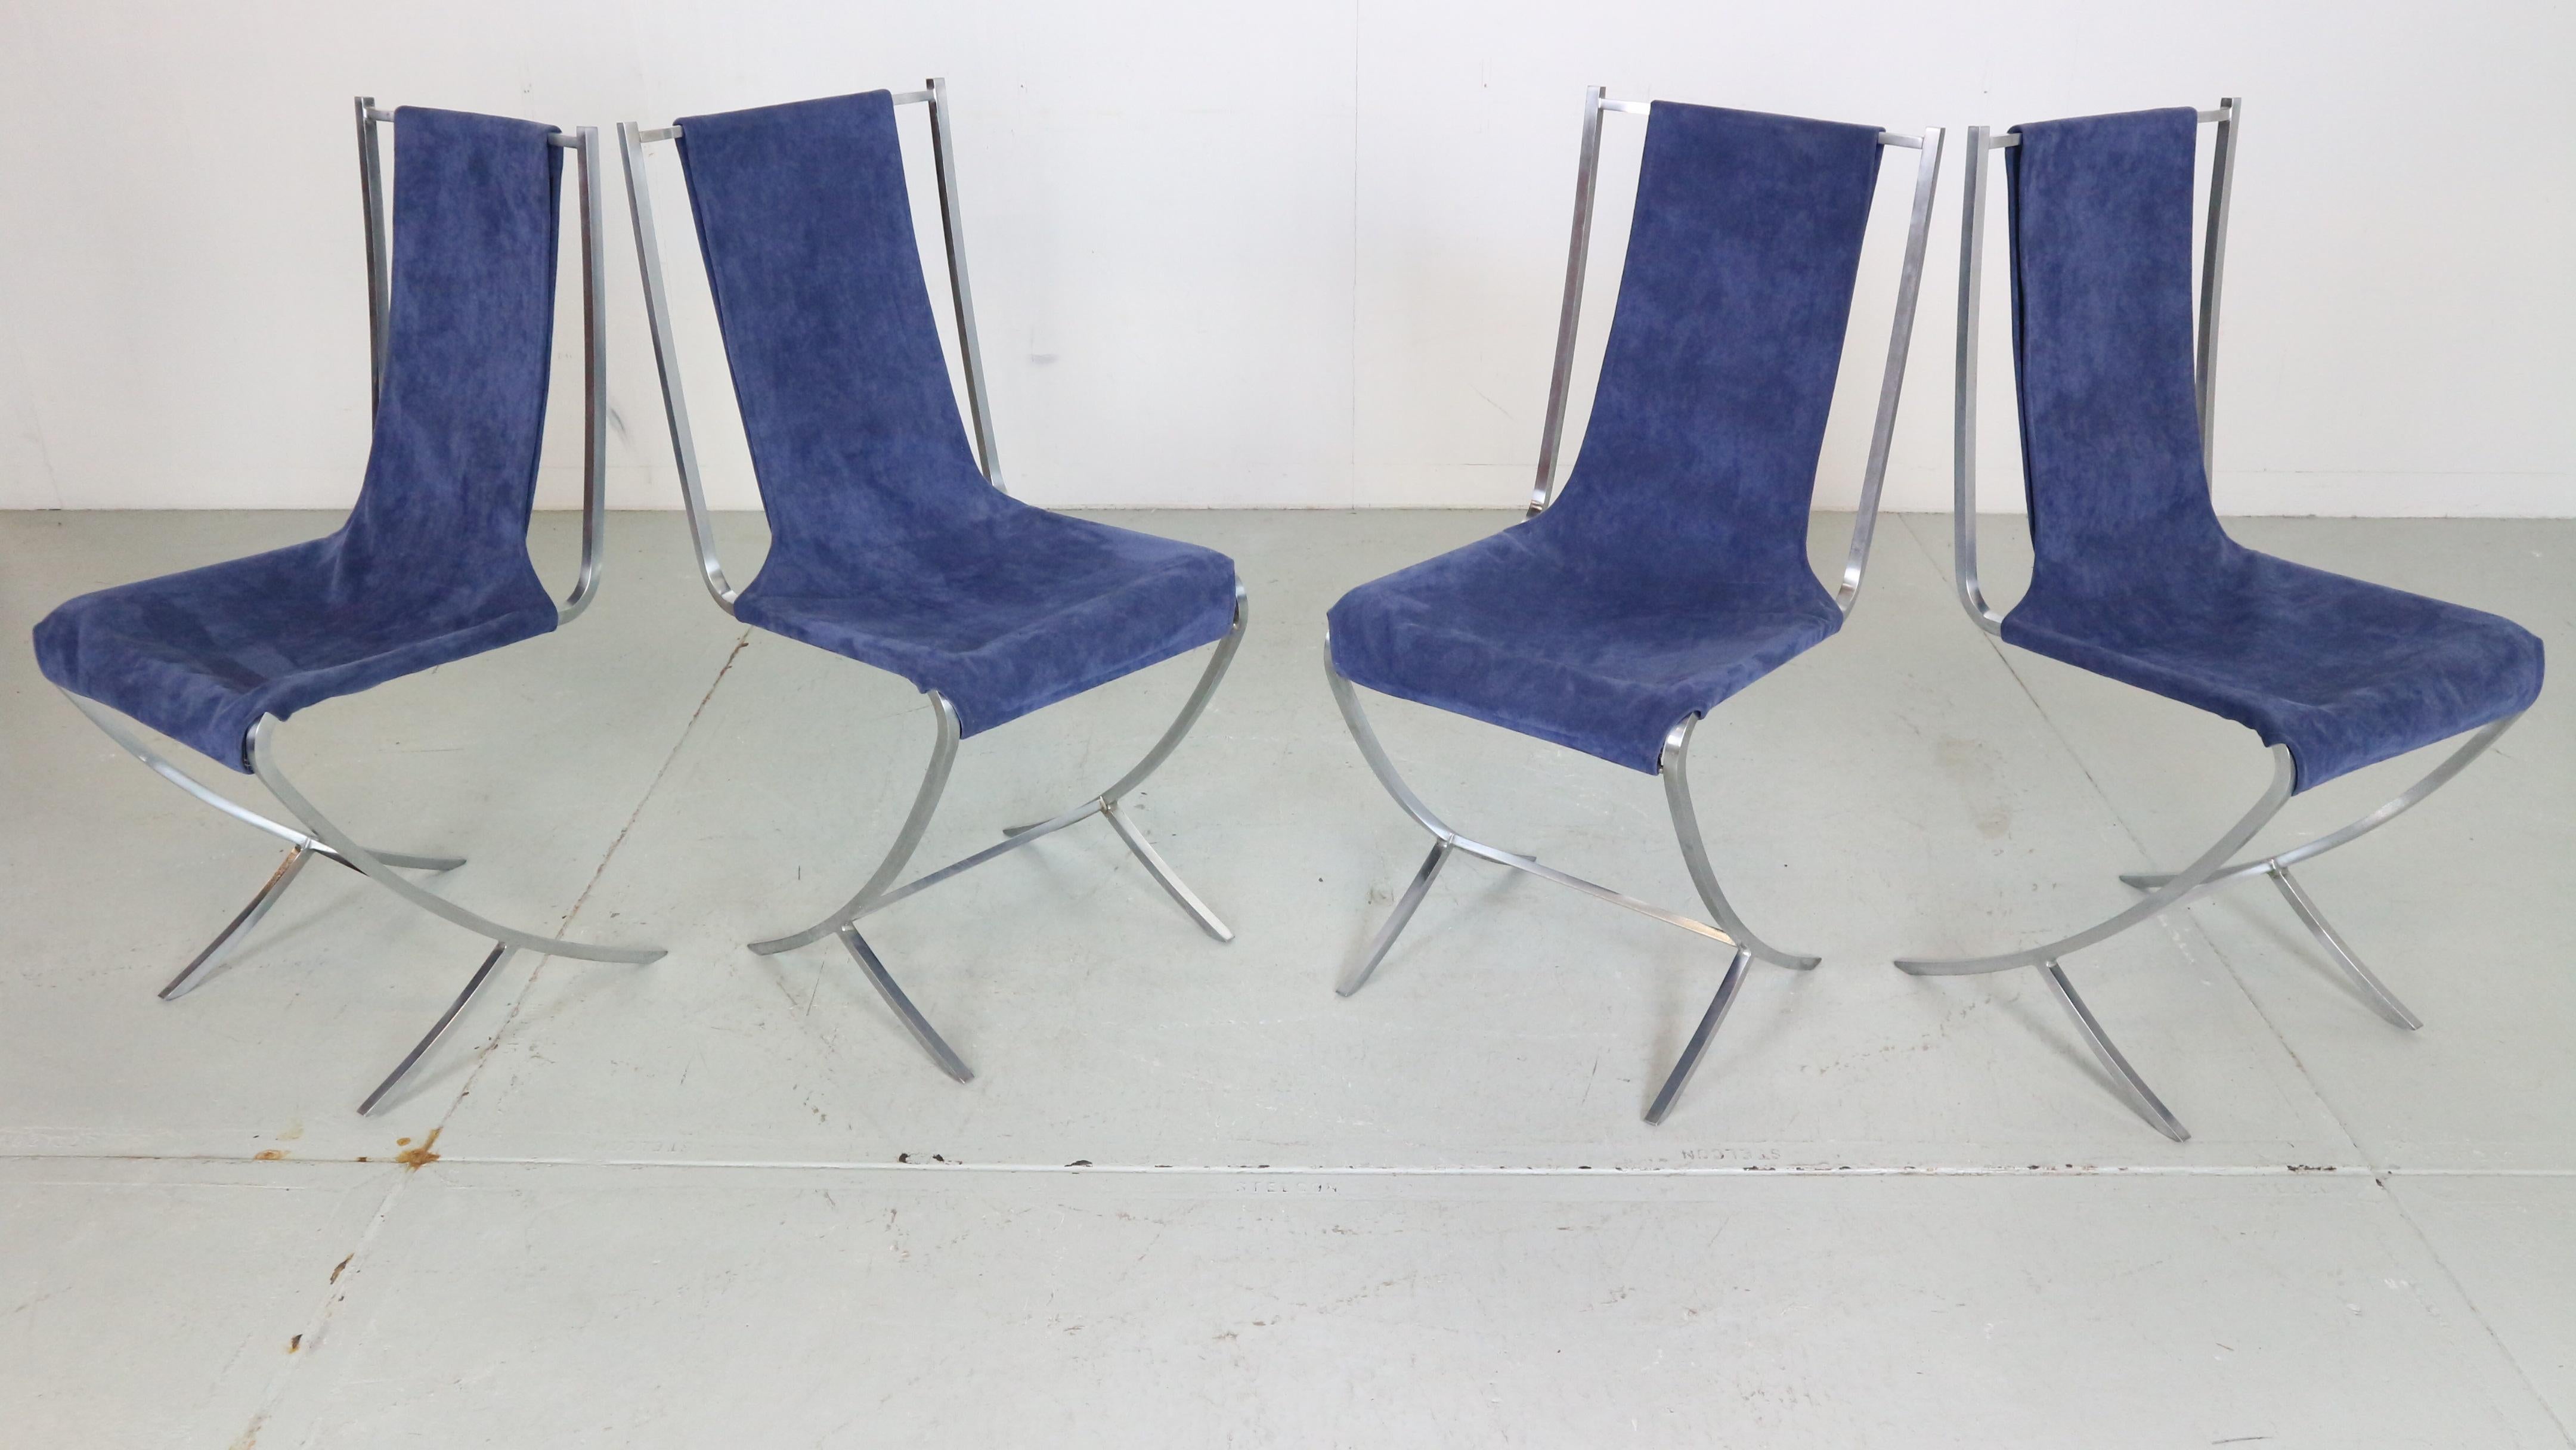 Cet ensemble de 4 chaises a été créé par le designer français d'avant-garde Pierre Cardin pour la célèbre société de décoration d'intérieur Maison Jansen, dans les années 1970 en France.

Vous pouvez vous allonger sur un velours bleu extravagant,